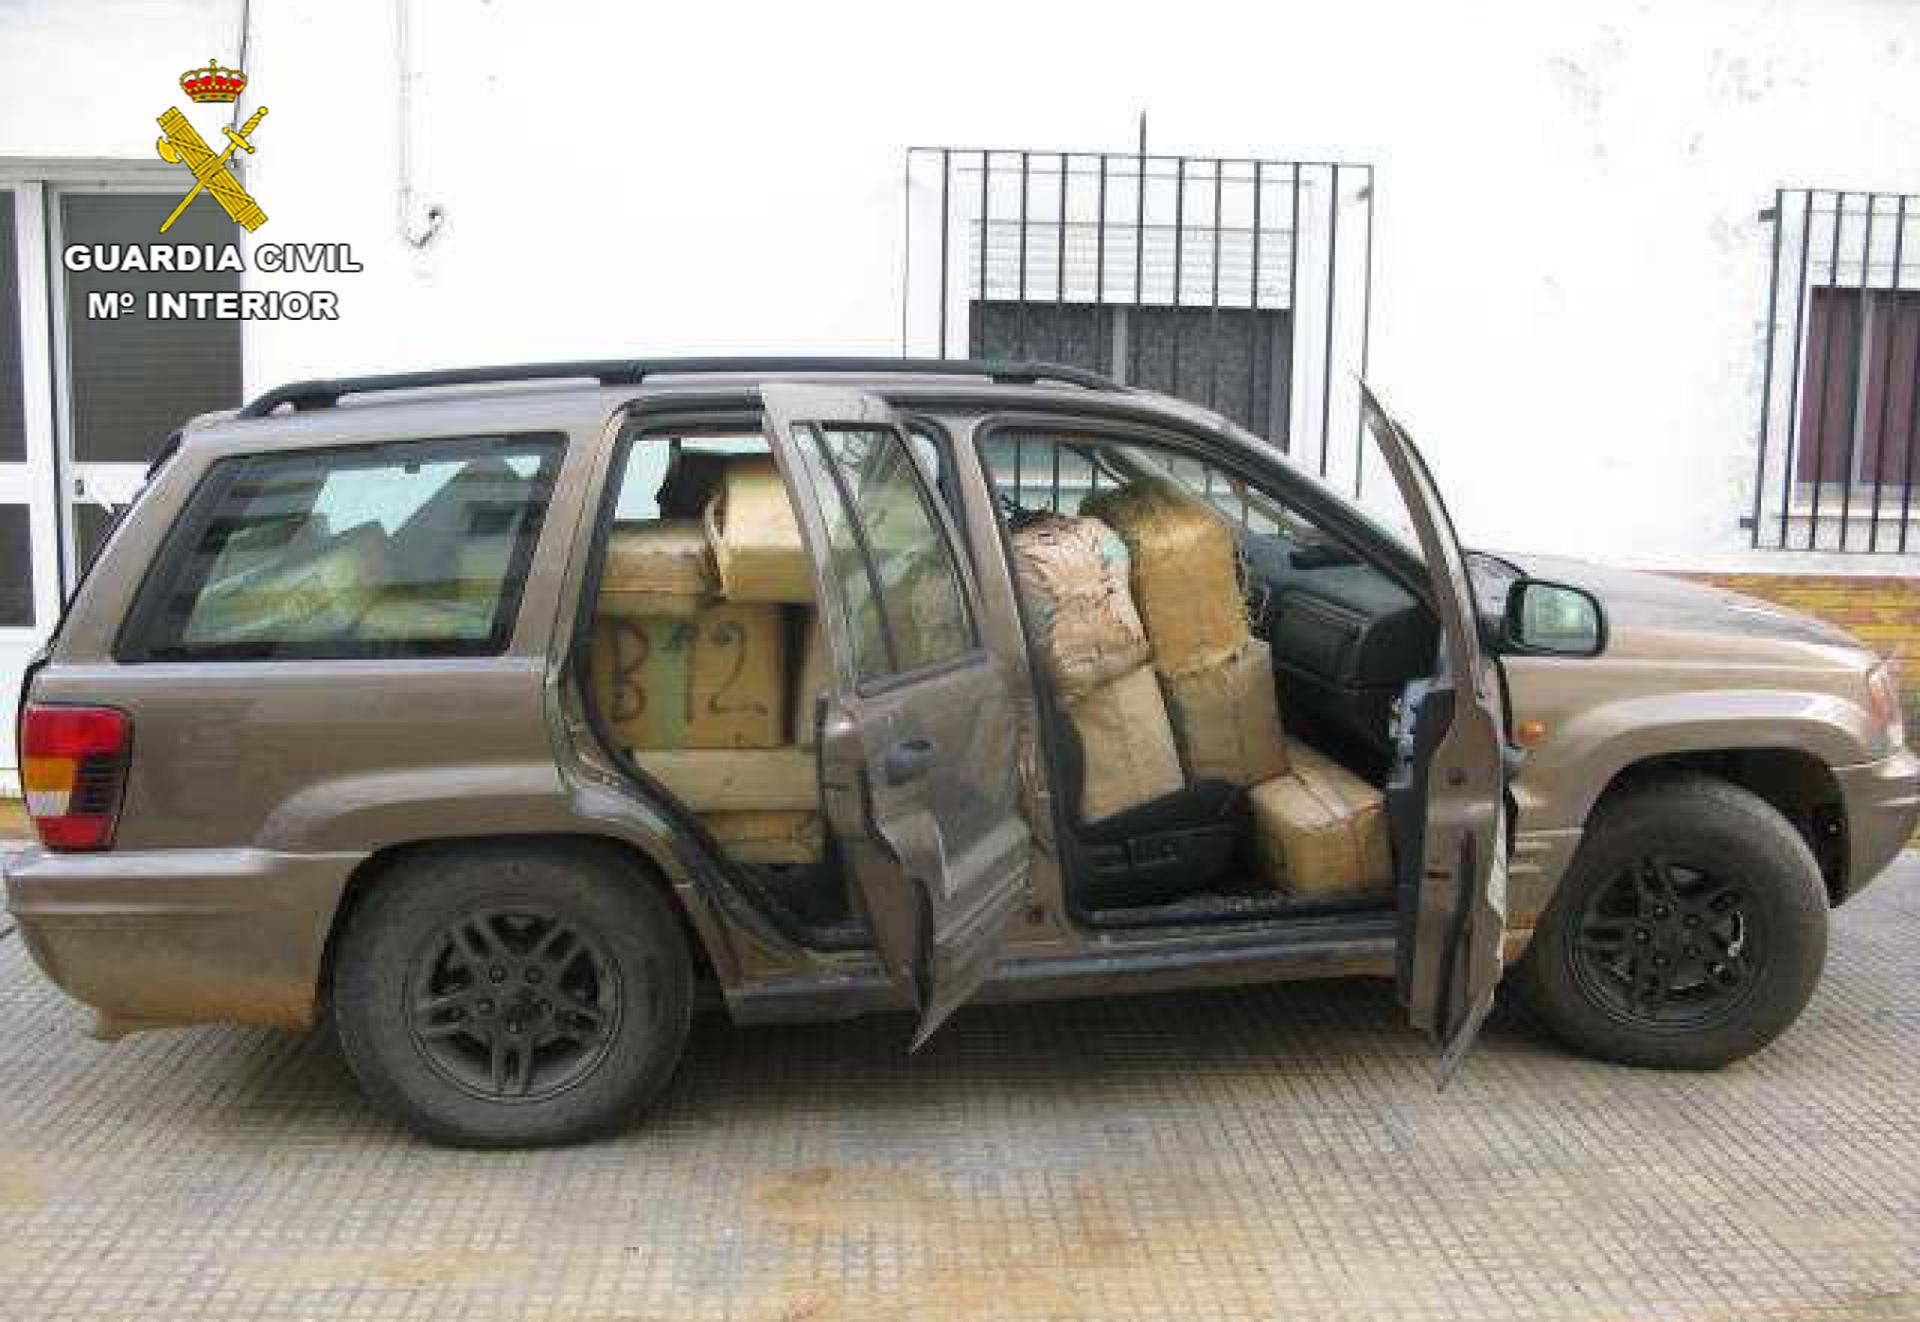 Hash packages in car in Spain